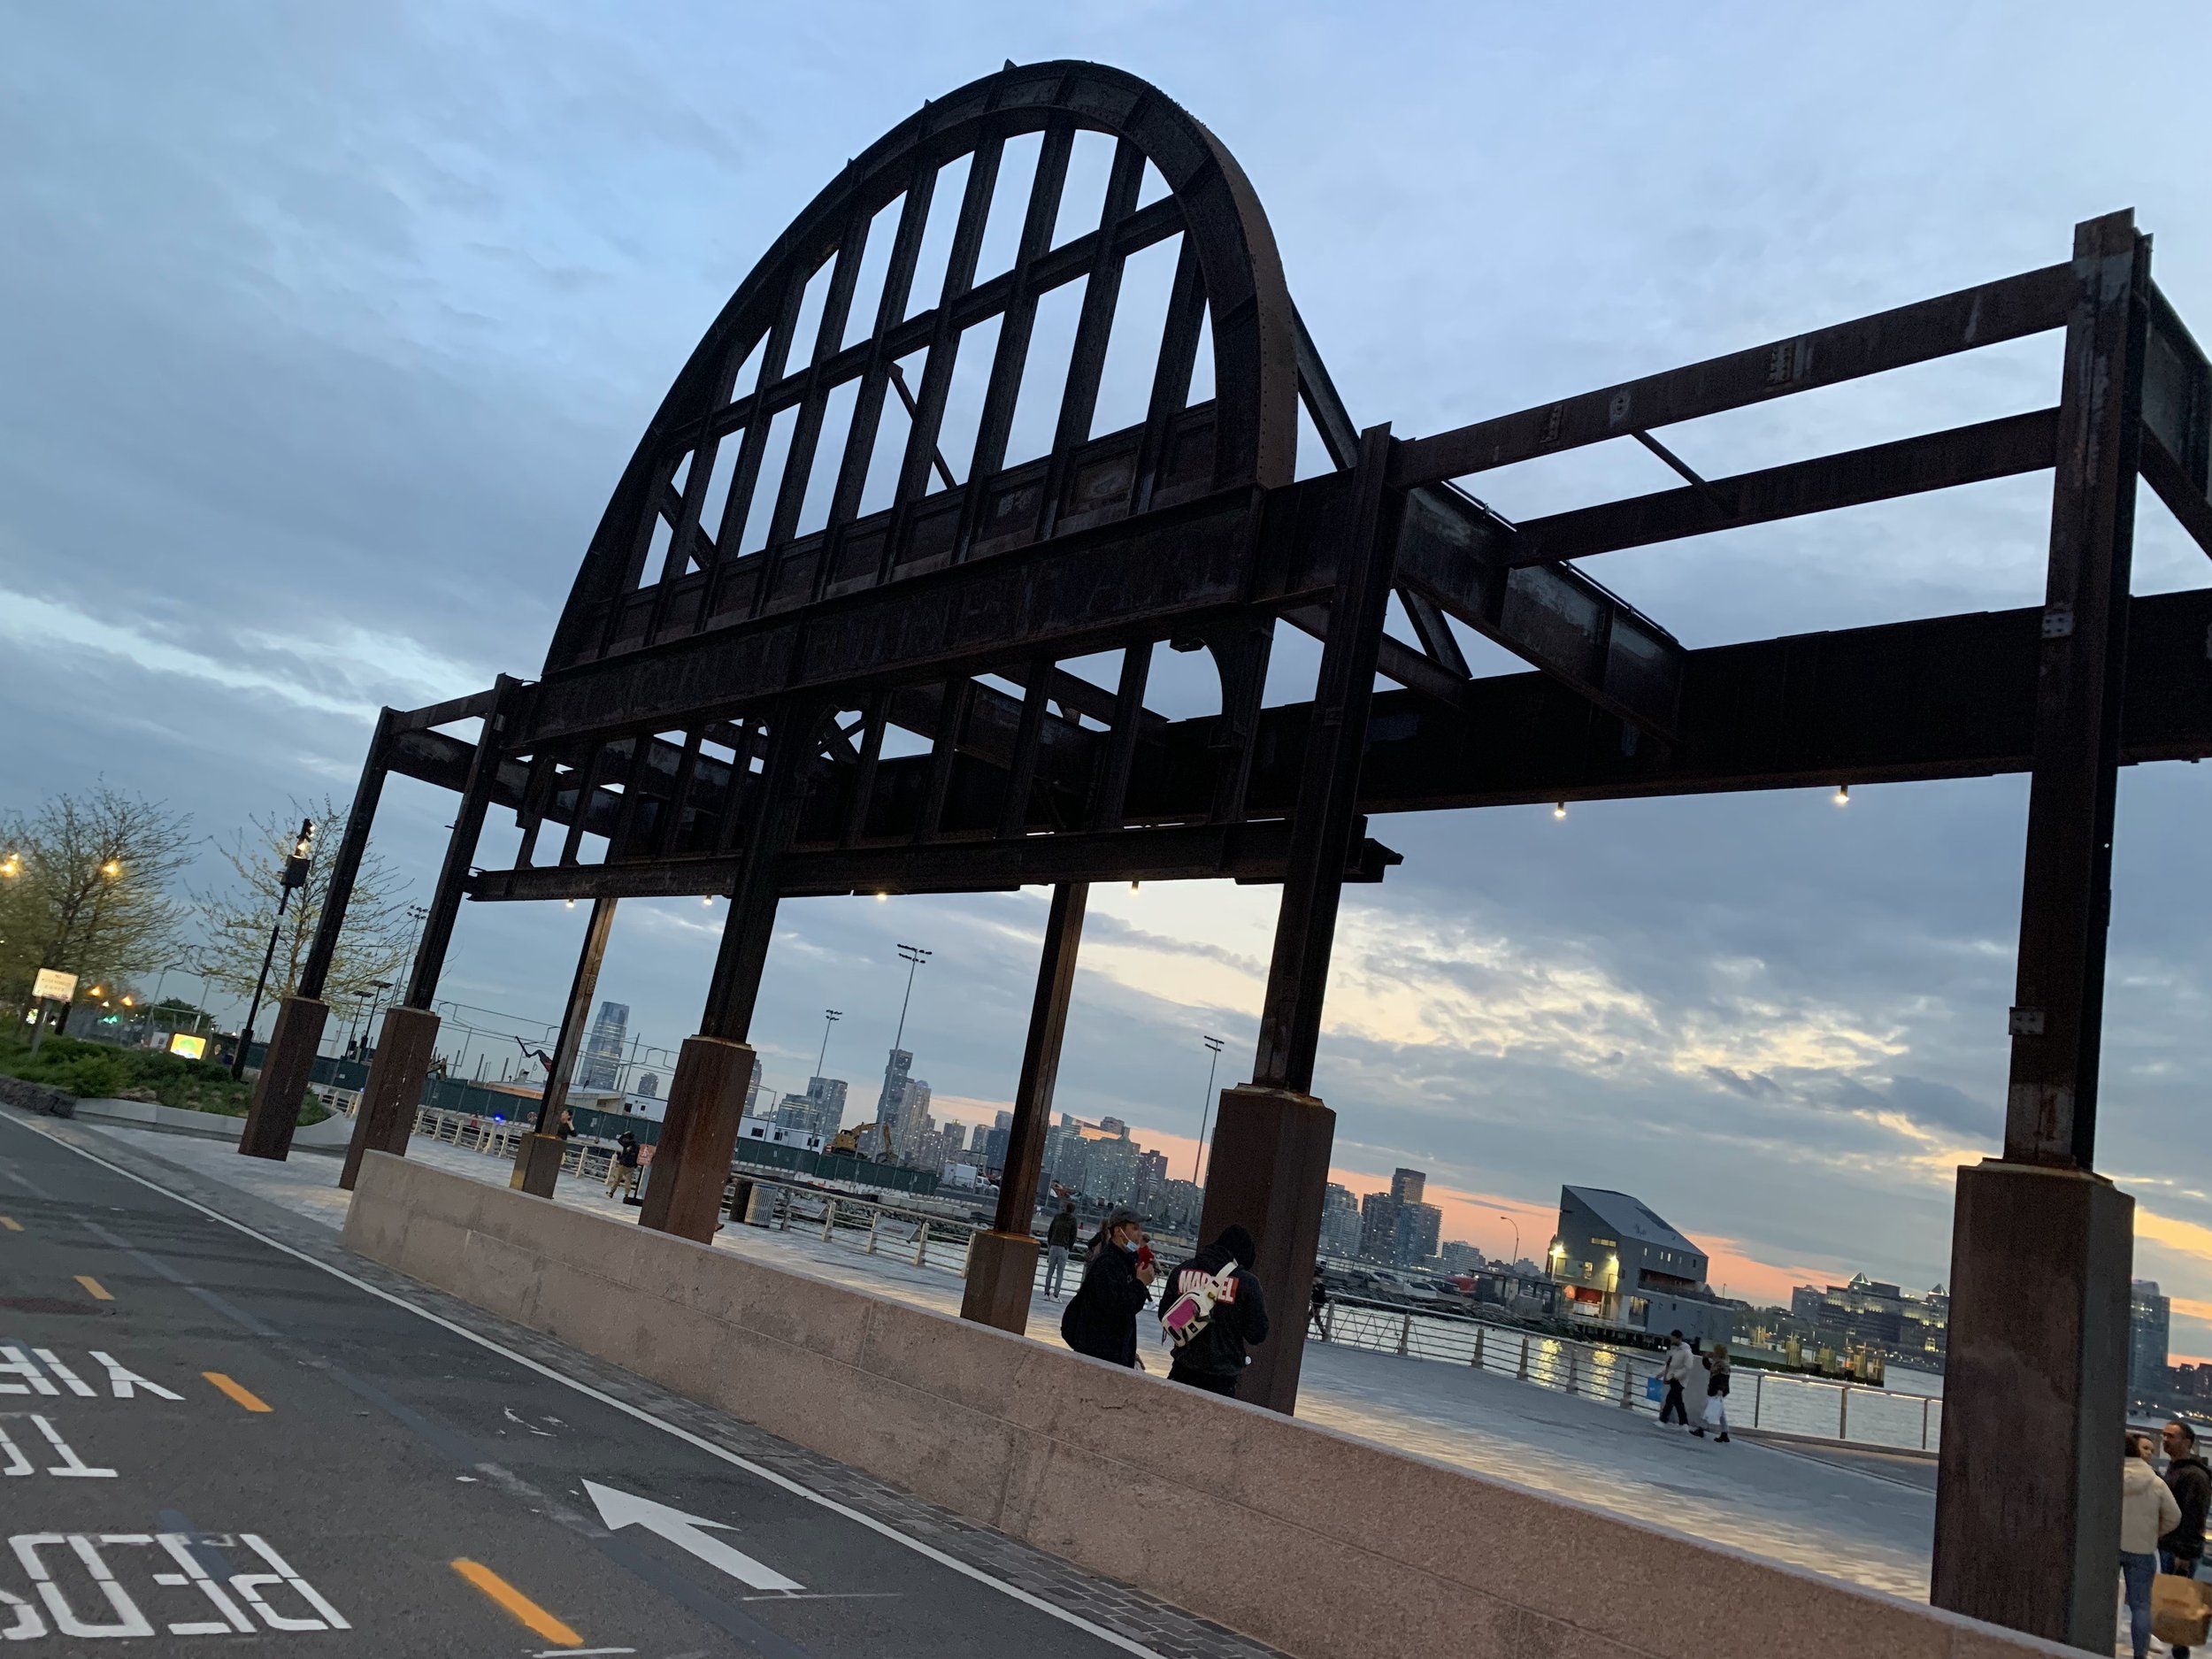 The iron gates of Pier 54